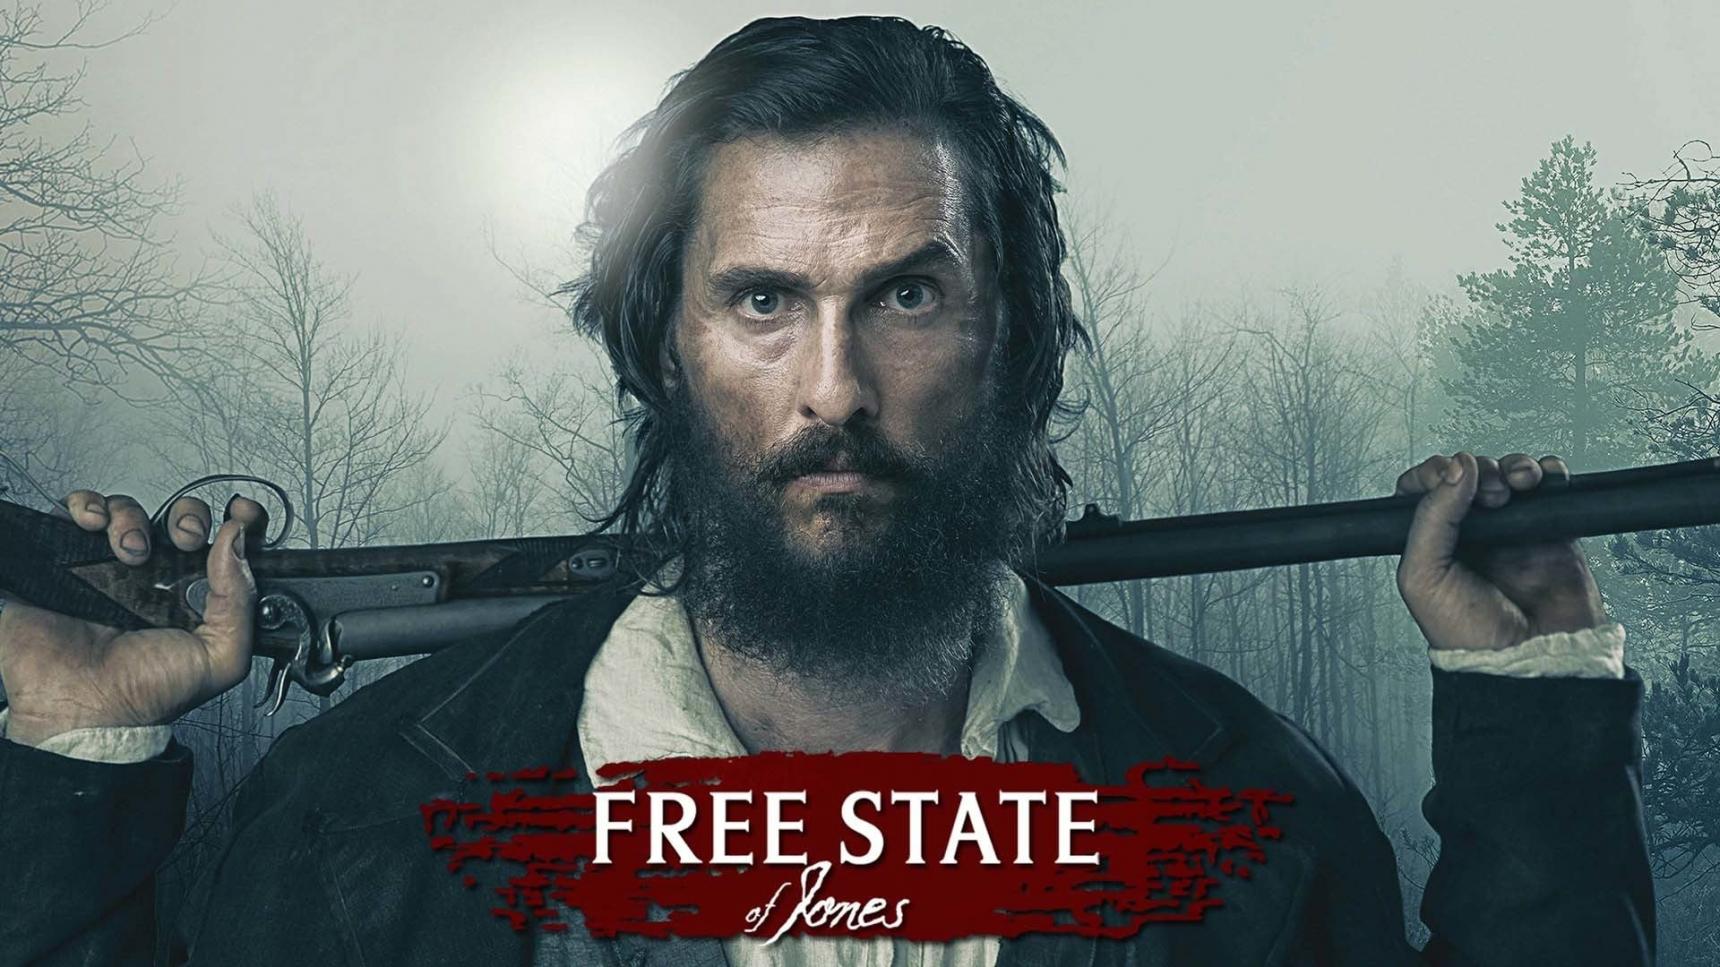 Fondo de pantalla de la película Los hombres libres de Jones en Cuevana 3 gratis